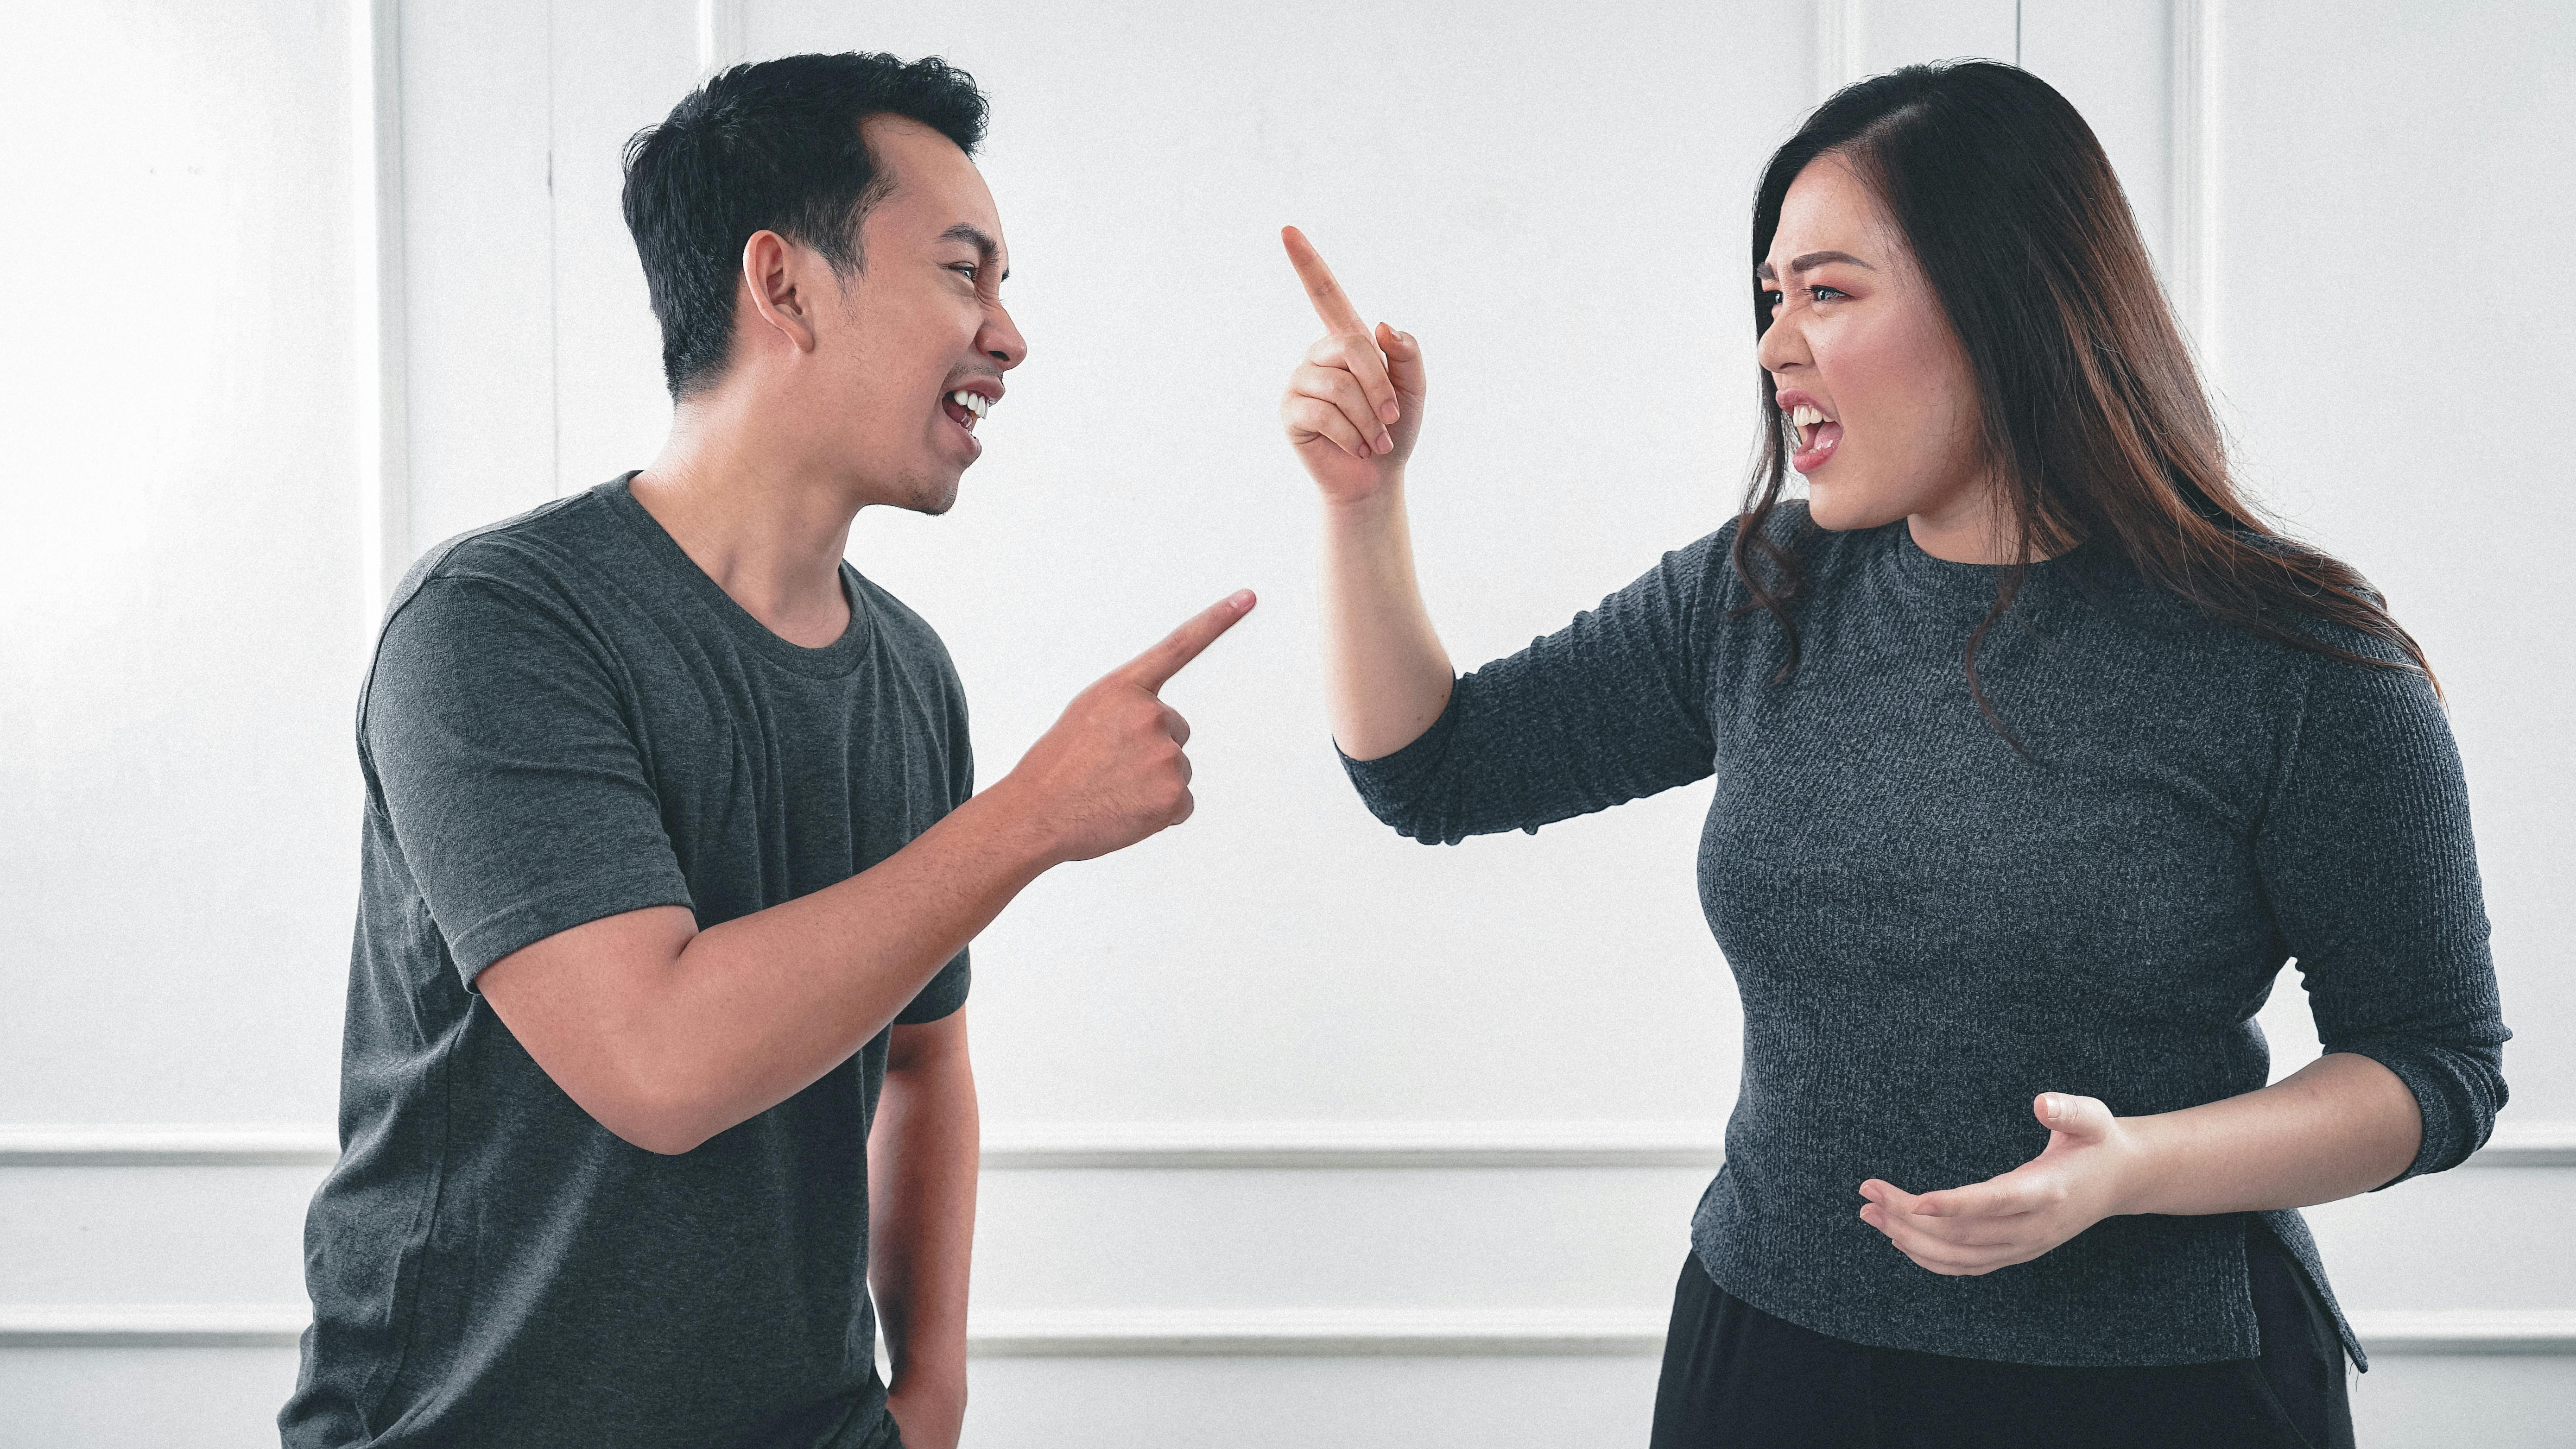 Un homme et une femme se disputent en se montrant du doigt | Source : Pexels